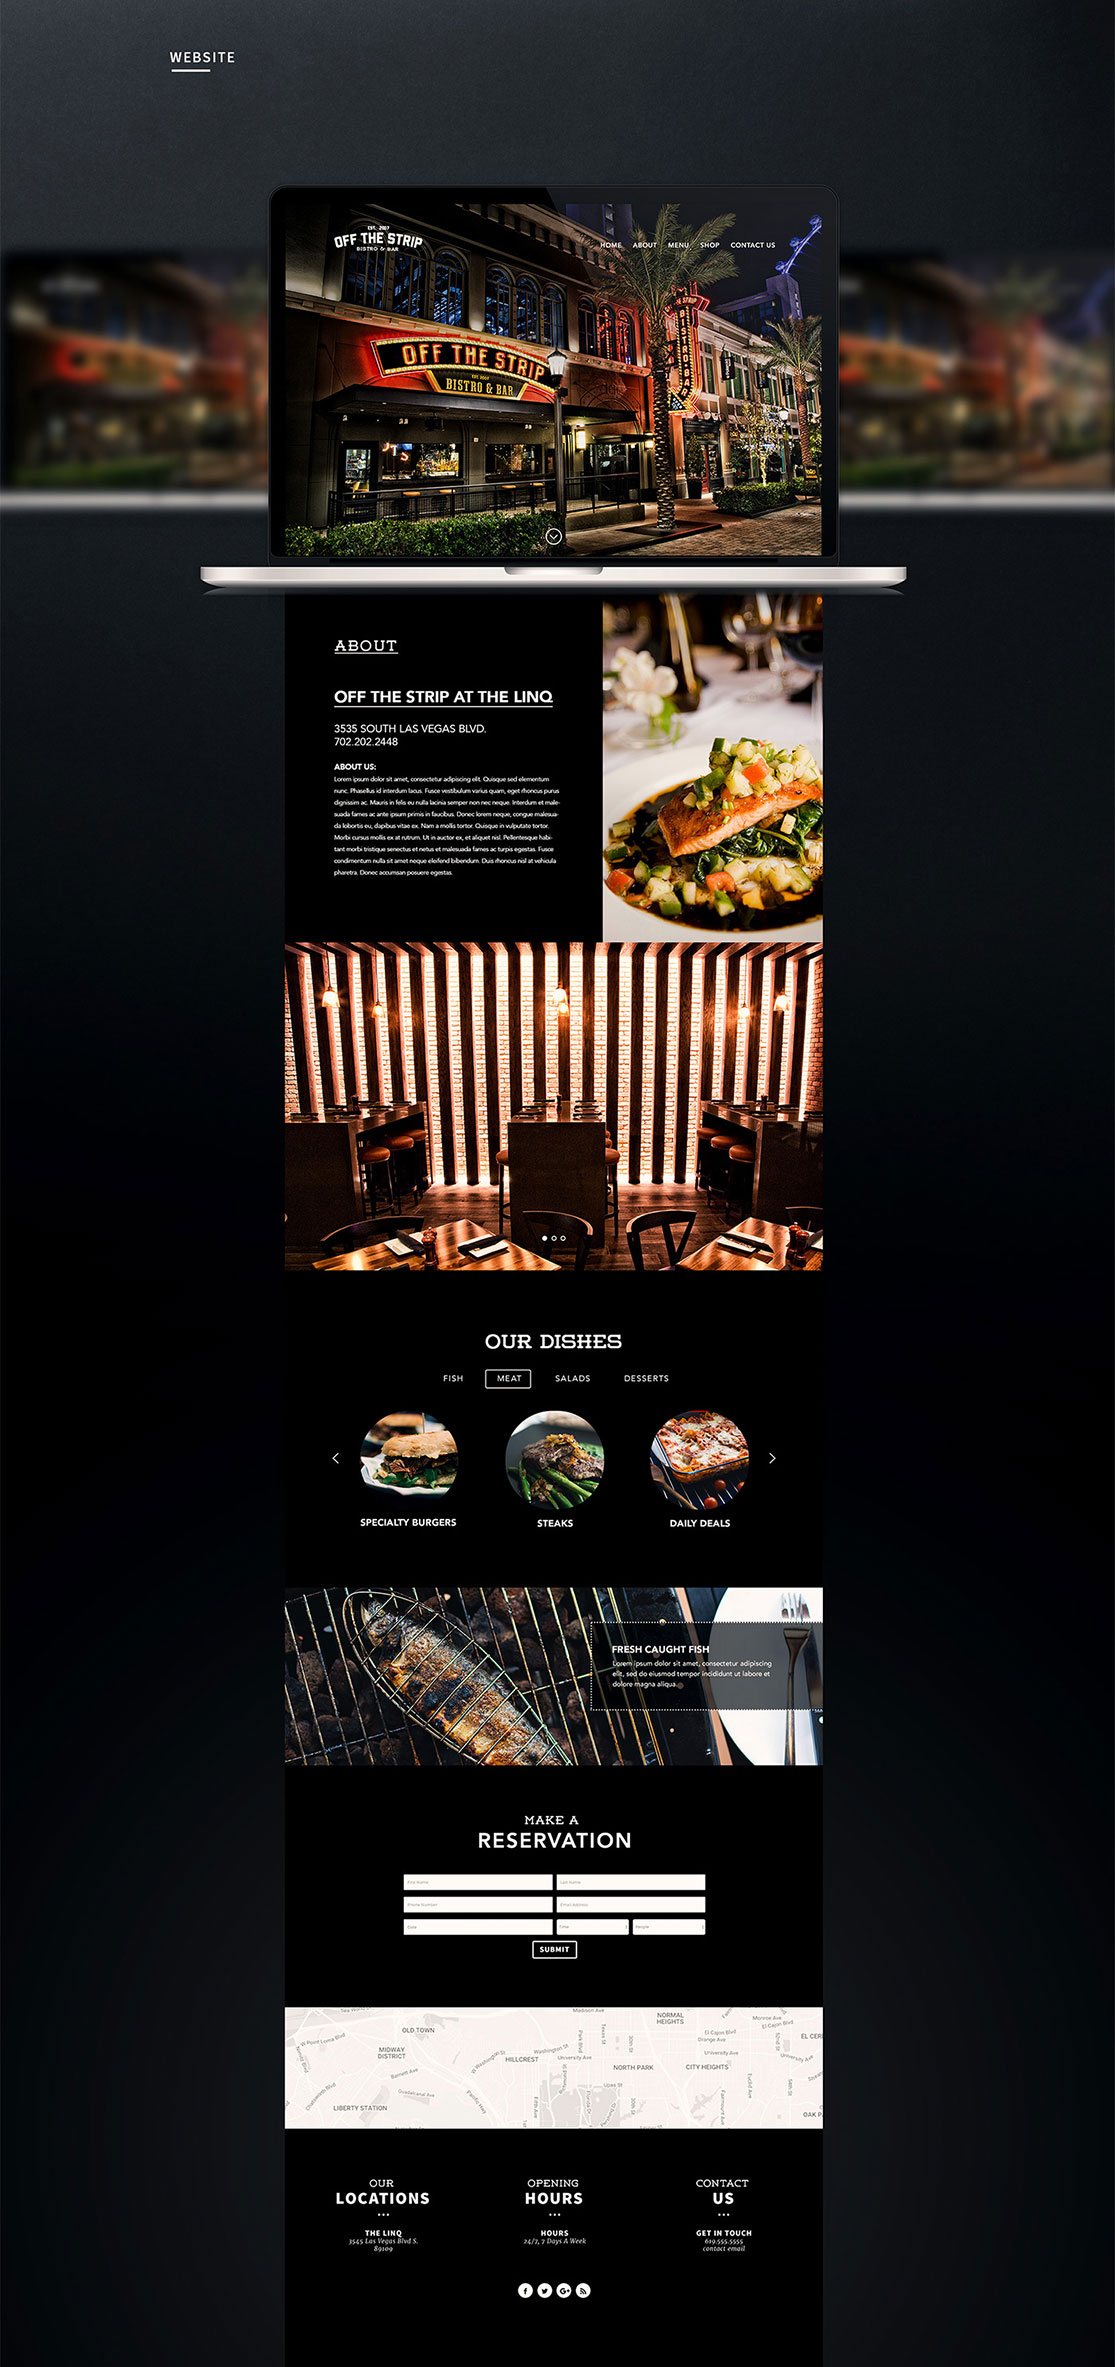 餐厅设计,餐厅VI设计,深圳餐厅VI设计,餐厅logo设计,深圳,北京,上海,广州,视觉餐饮